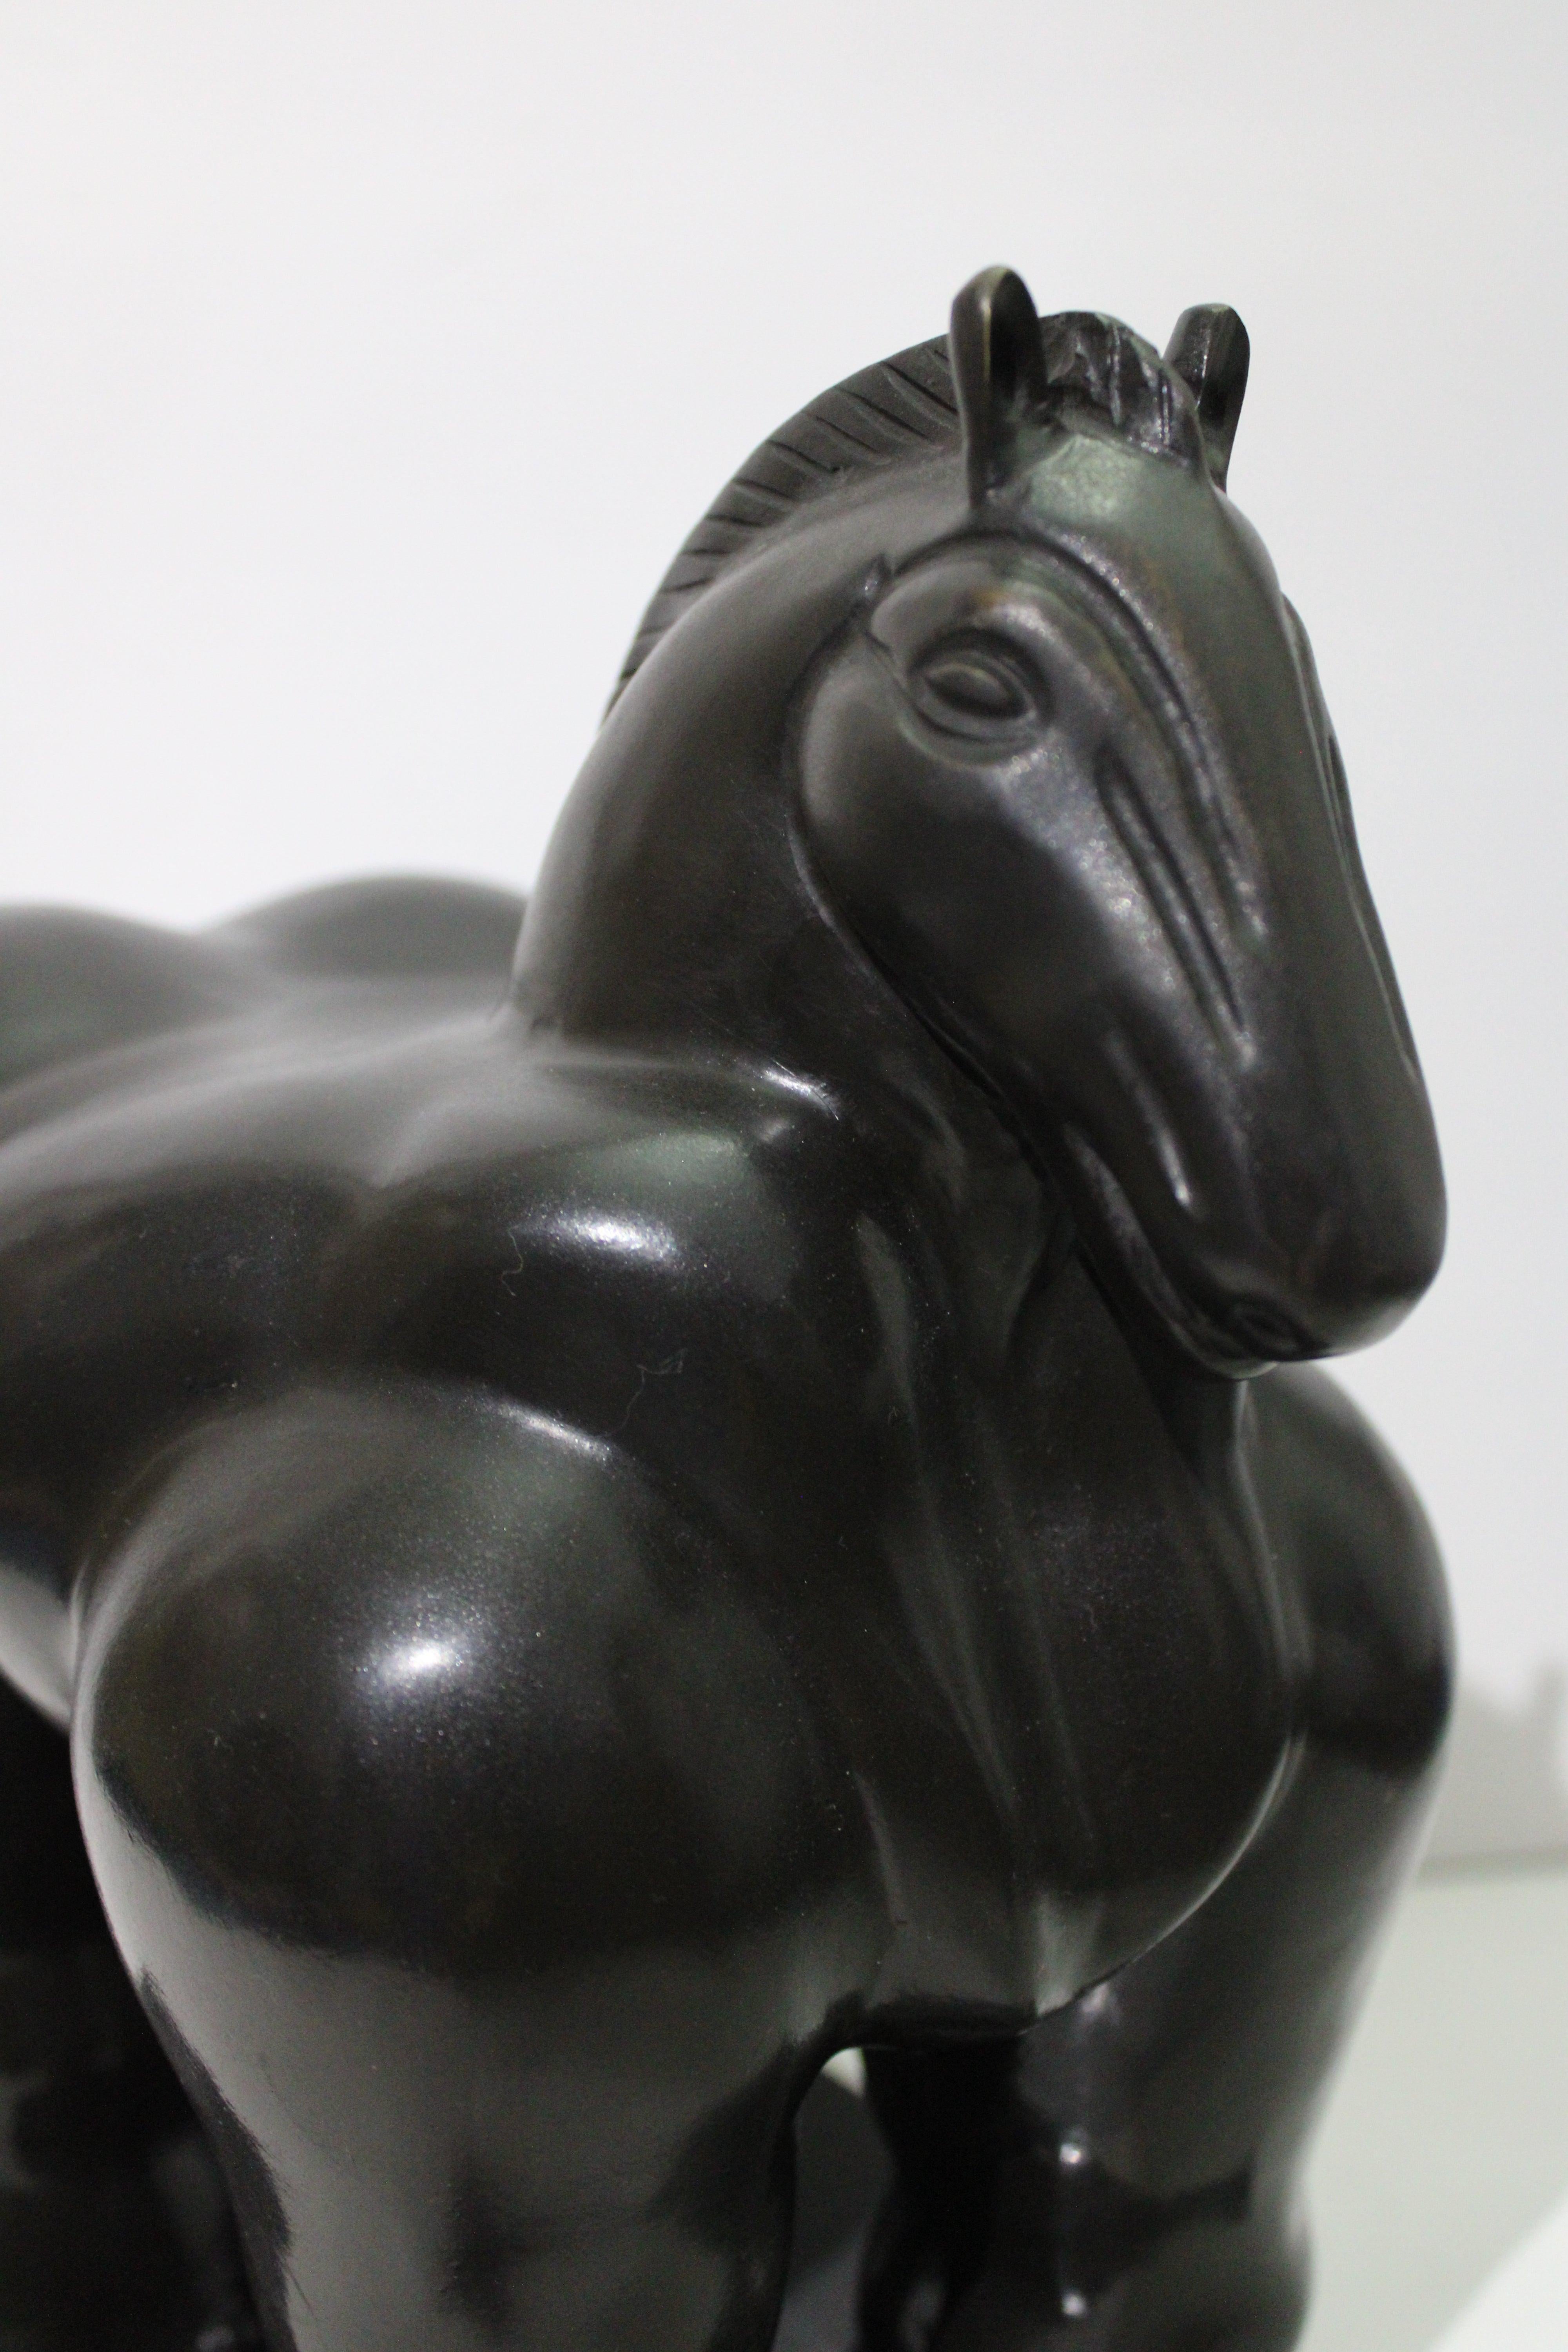 Nach Botero – Pferd, Bronzeskulptur (Zeitgenössisch), Sculpture, von Fernando Botero